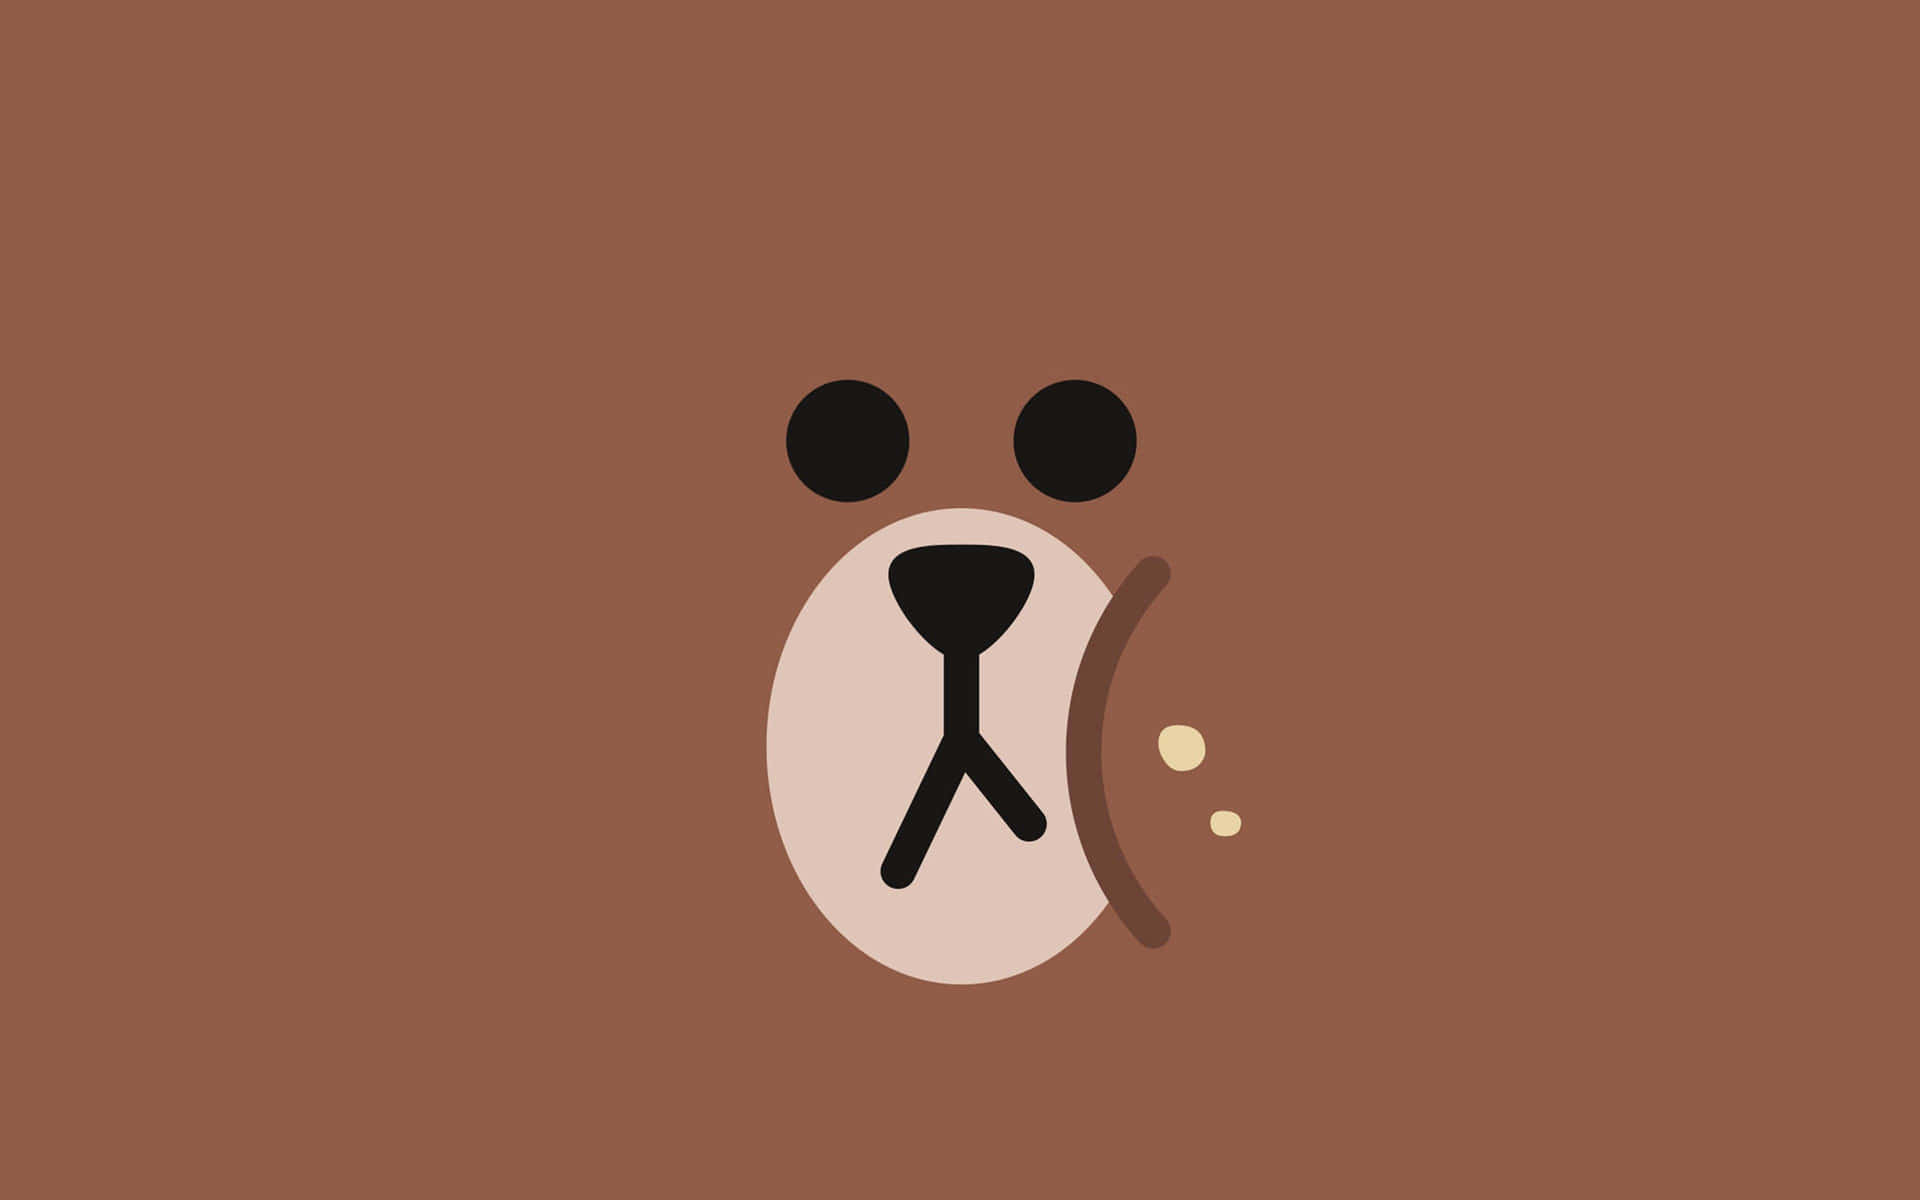 Brown Minimalist Bear Background